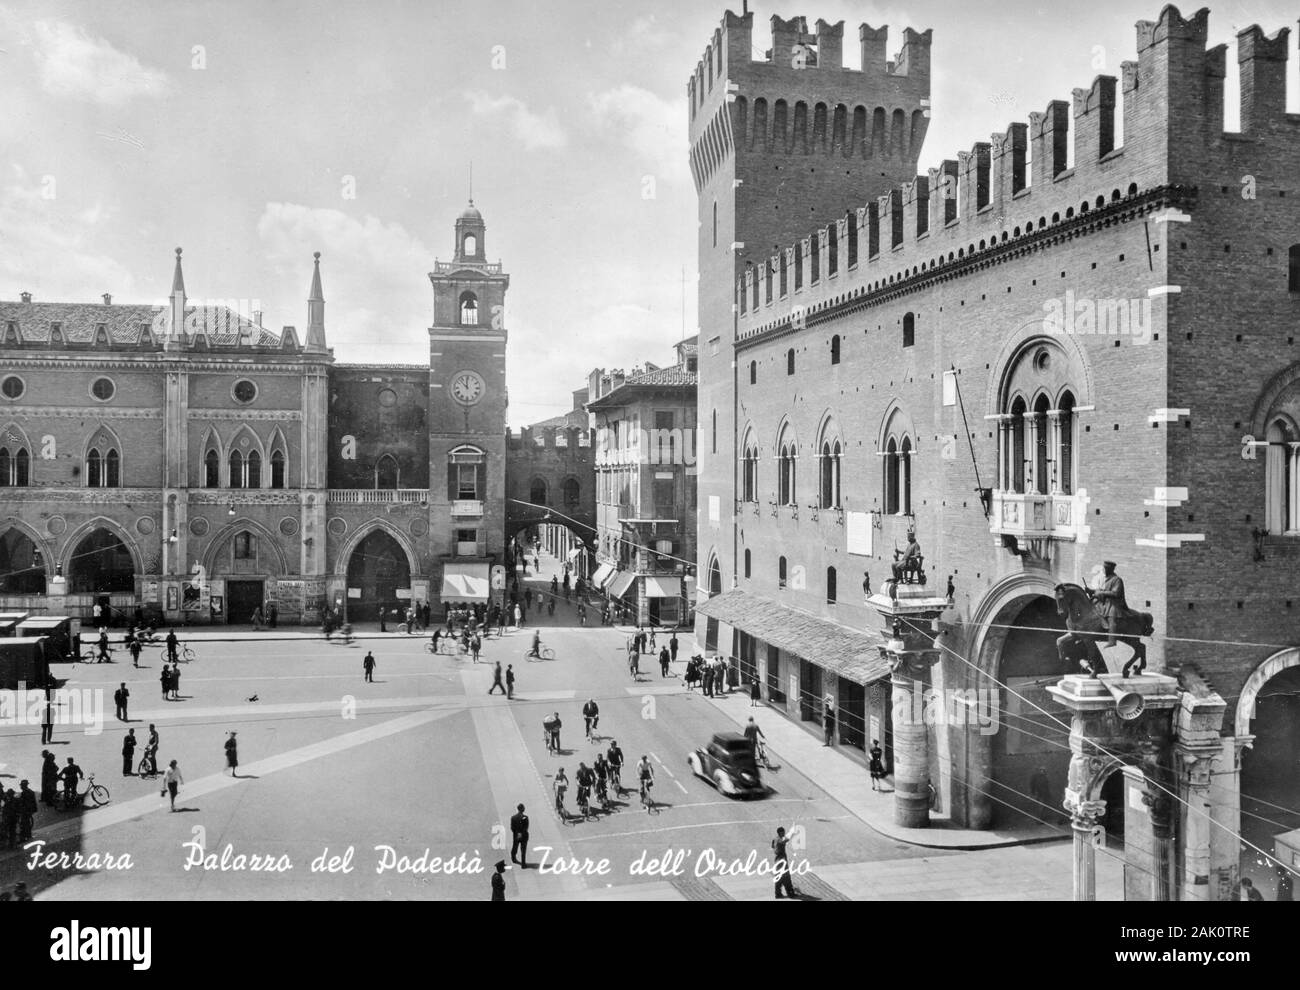 Un 1930 ou 1940 noir et blanc carte postale du Palazzo Municipale, Ferrara, Italie. L'hôtel de ville de Ferrara est situé dans la place de l'hôtel de ville 2. La cité médiévale Palazzo Ducale Estense fut la résidence des ducs (Este de la famille) et est actuellement utilisé comme le centre administratif de Ferrara, Italie Banque D'Images